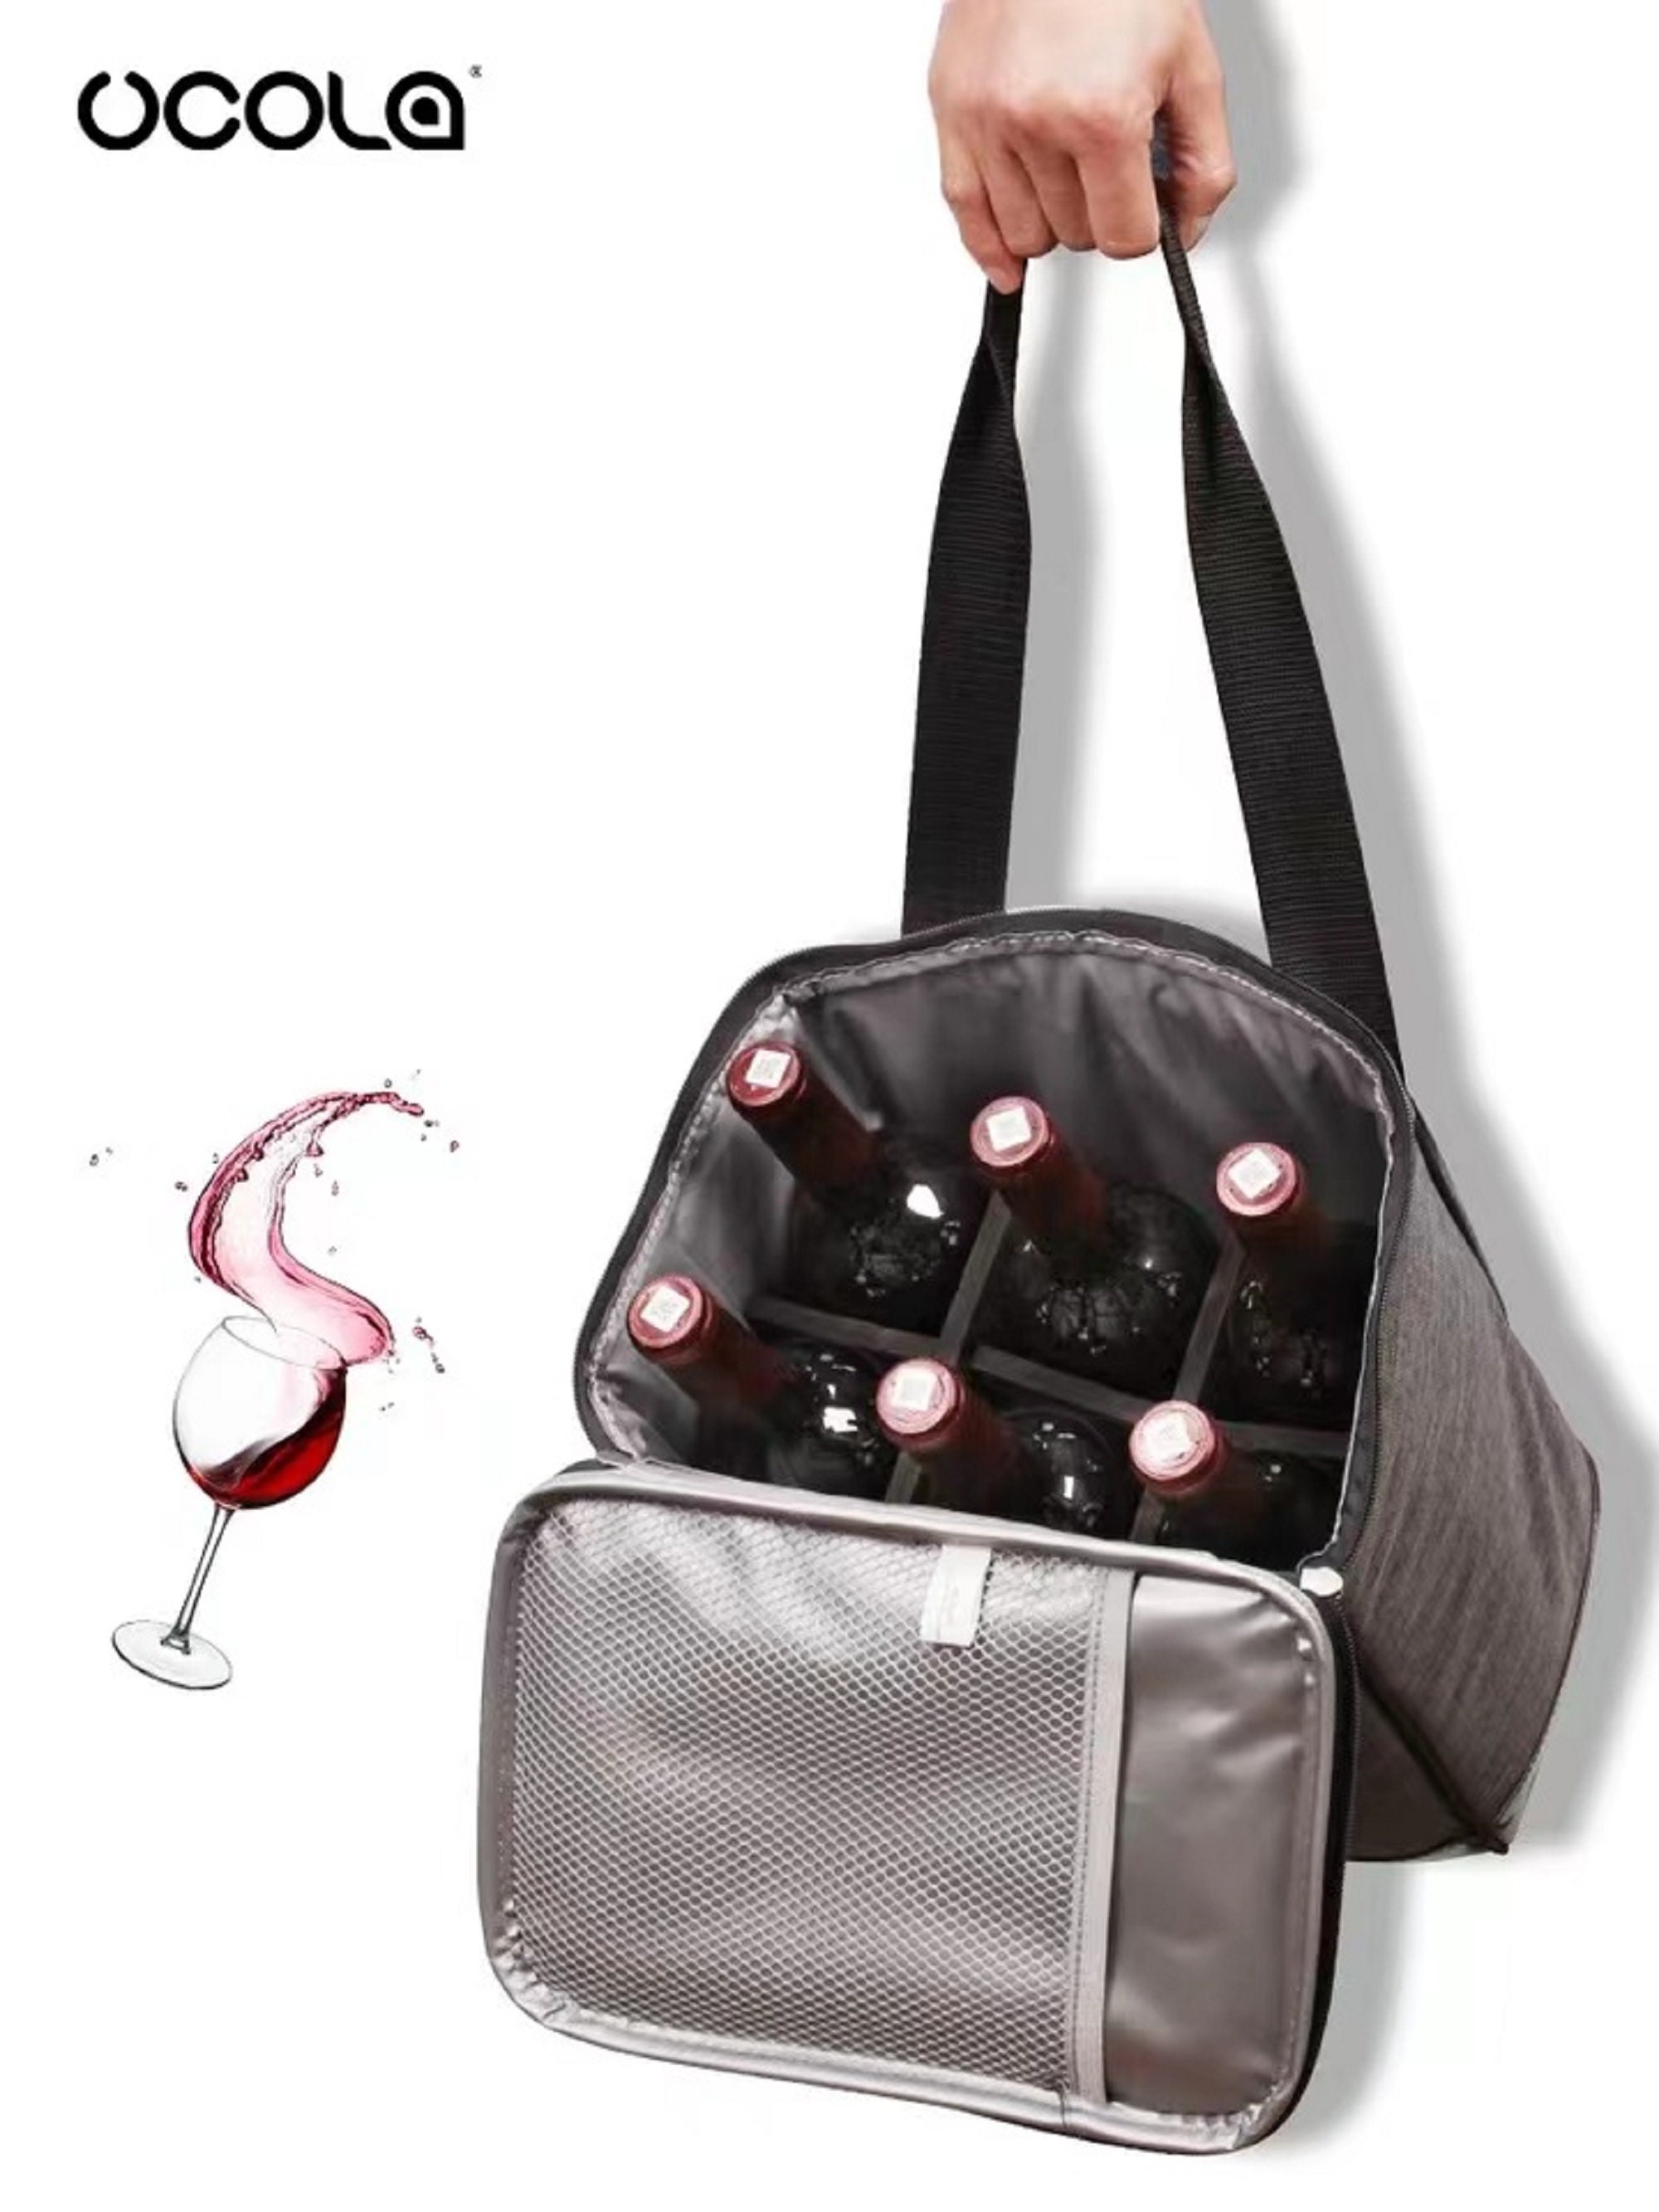 2 sacchetti trasparenti antigoccia refrigerati per bottiglia di vino rosso e champagne. 